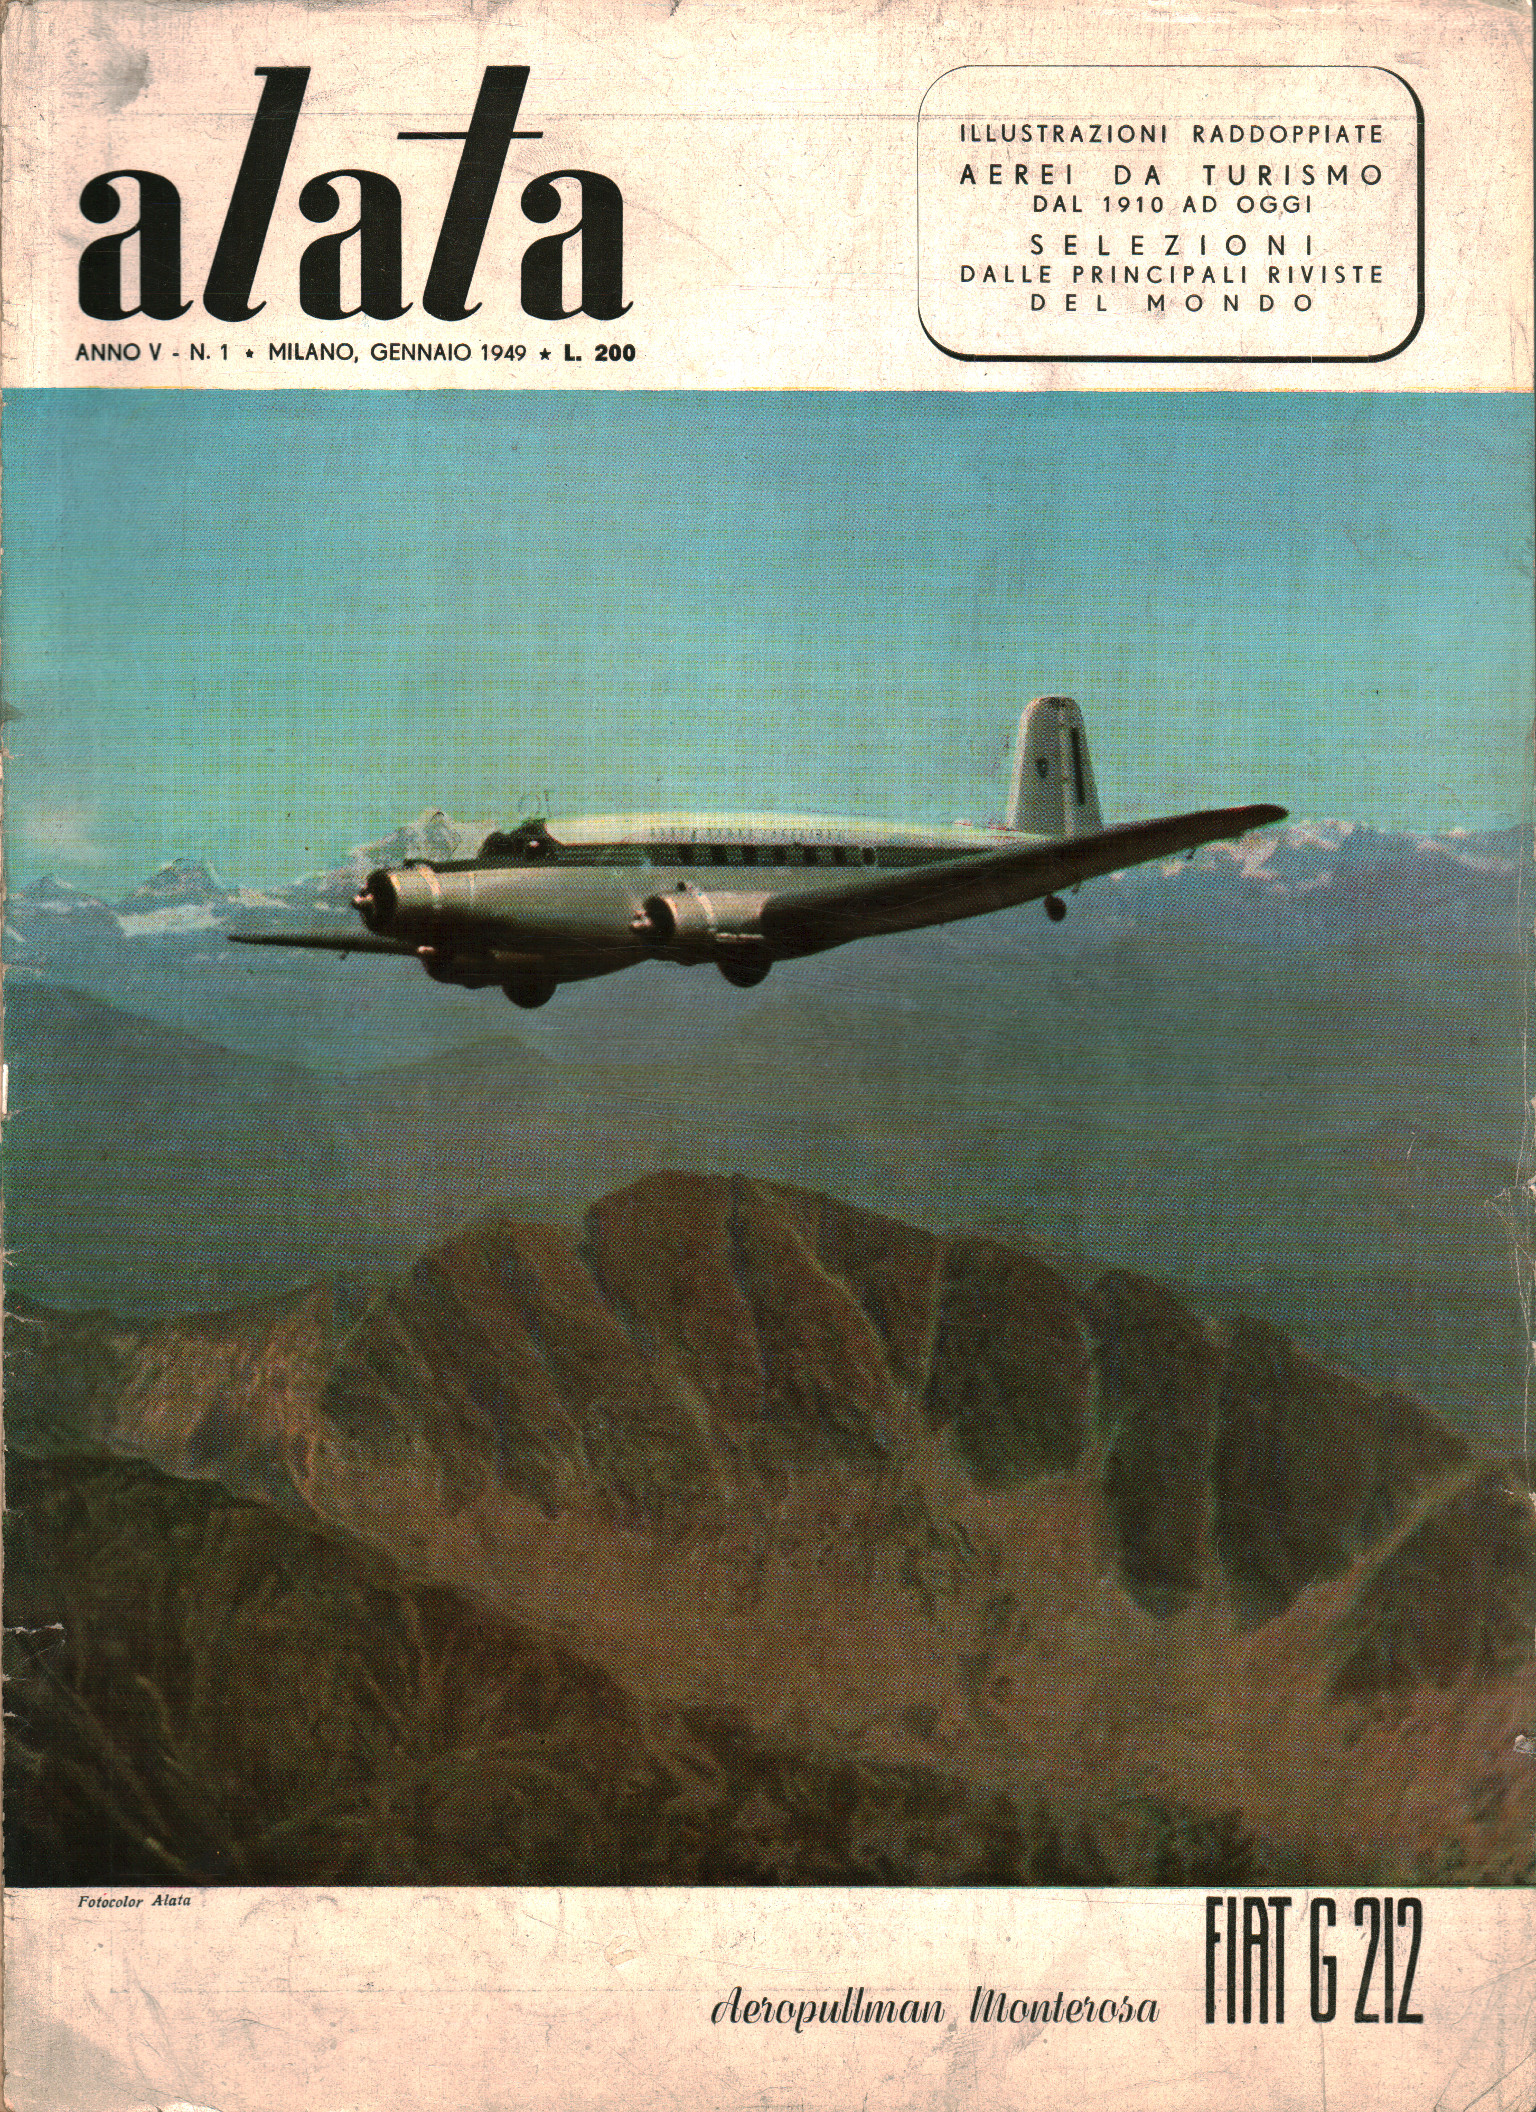 Con alas. Año V (1949) núms. 1-7 (enero-